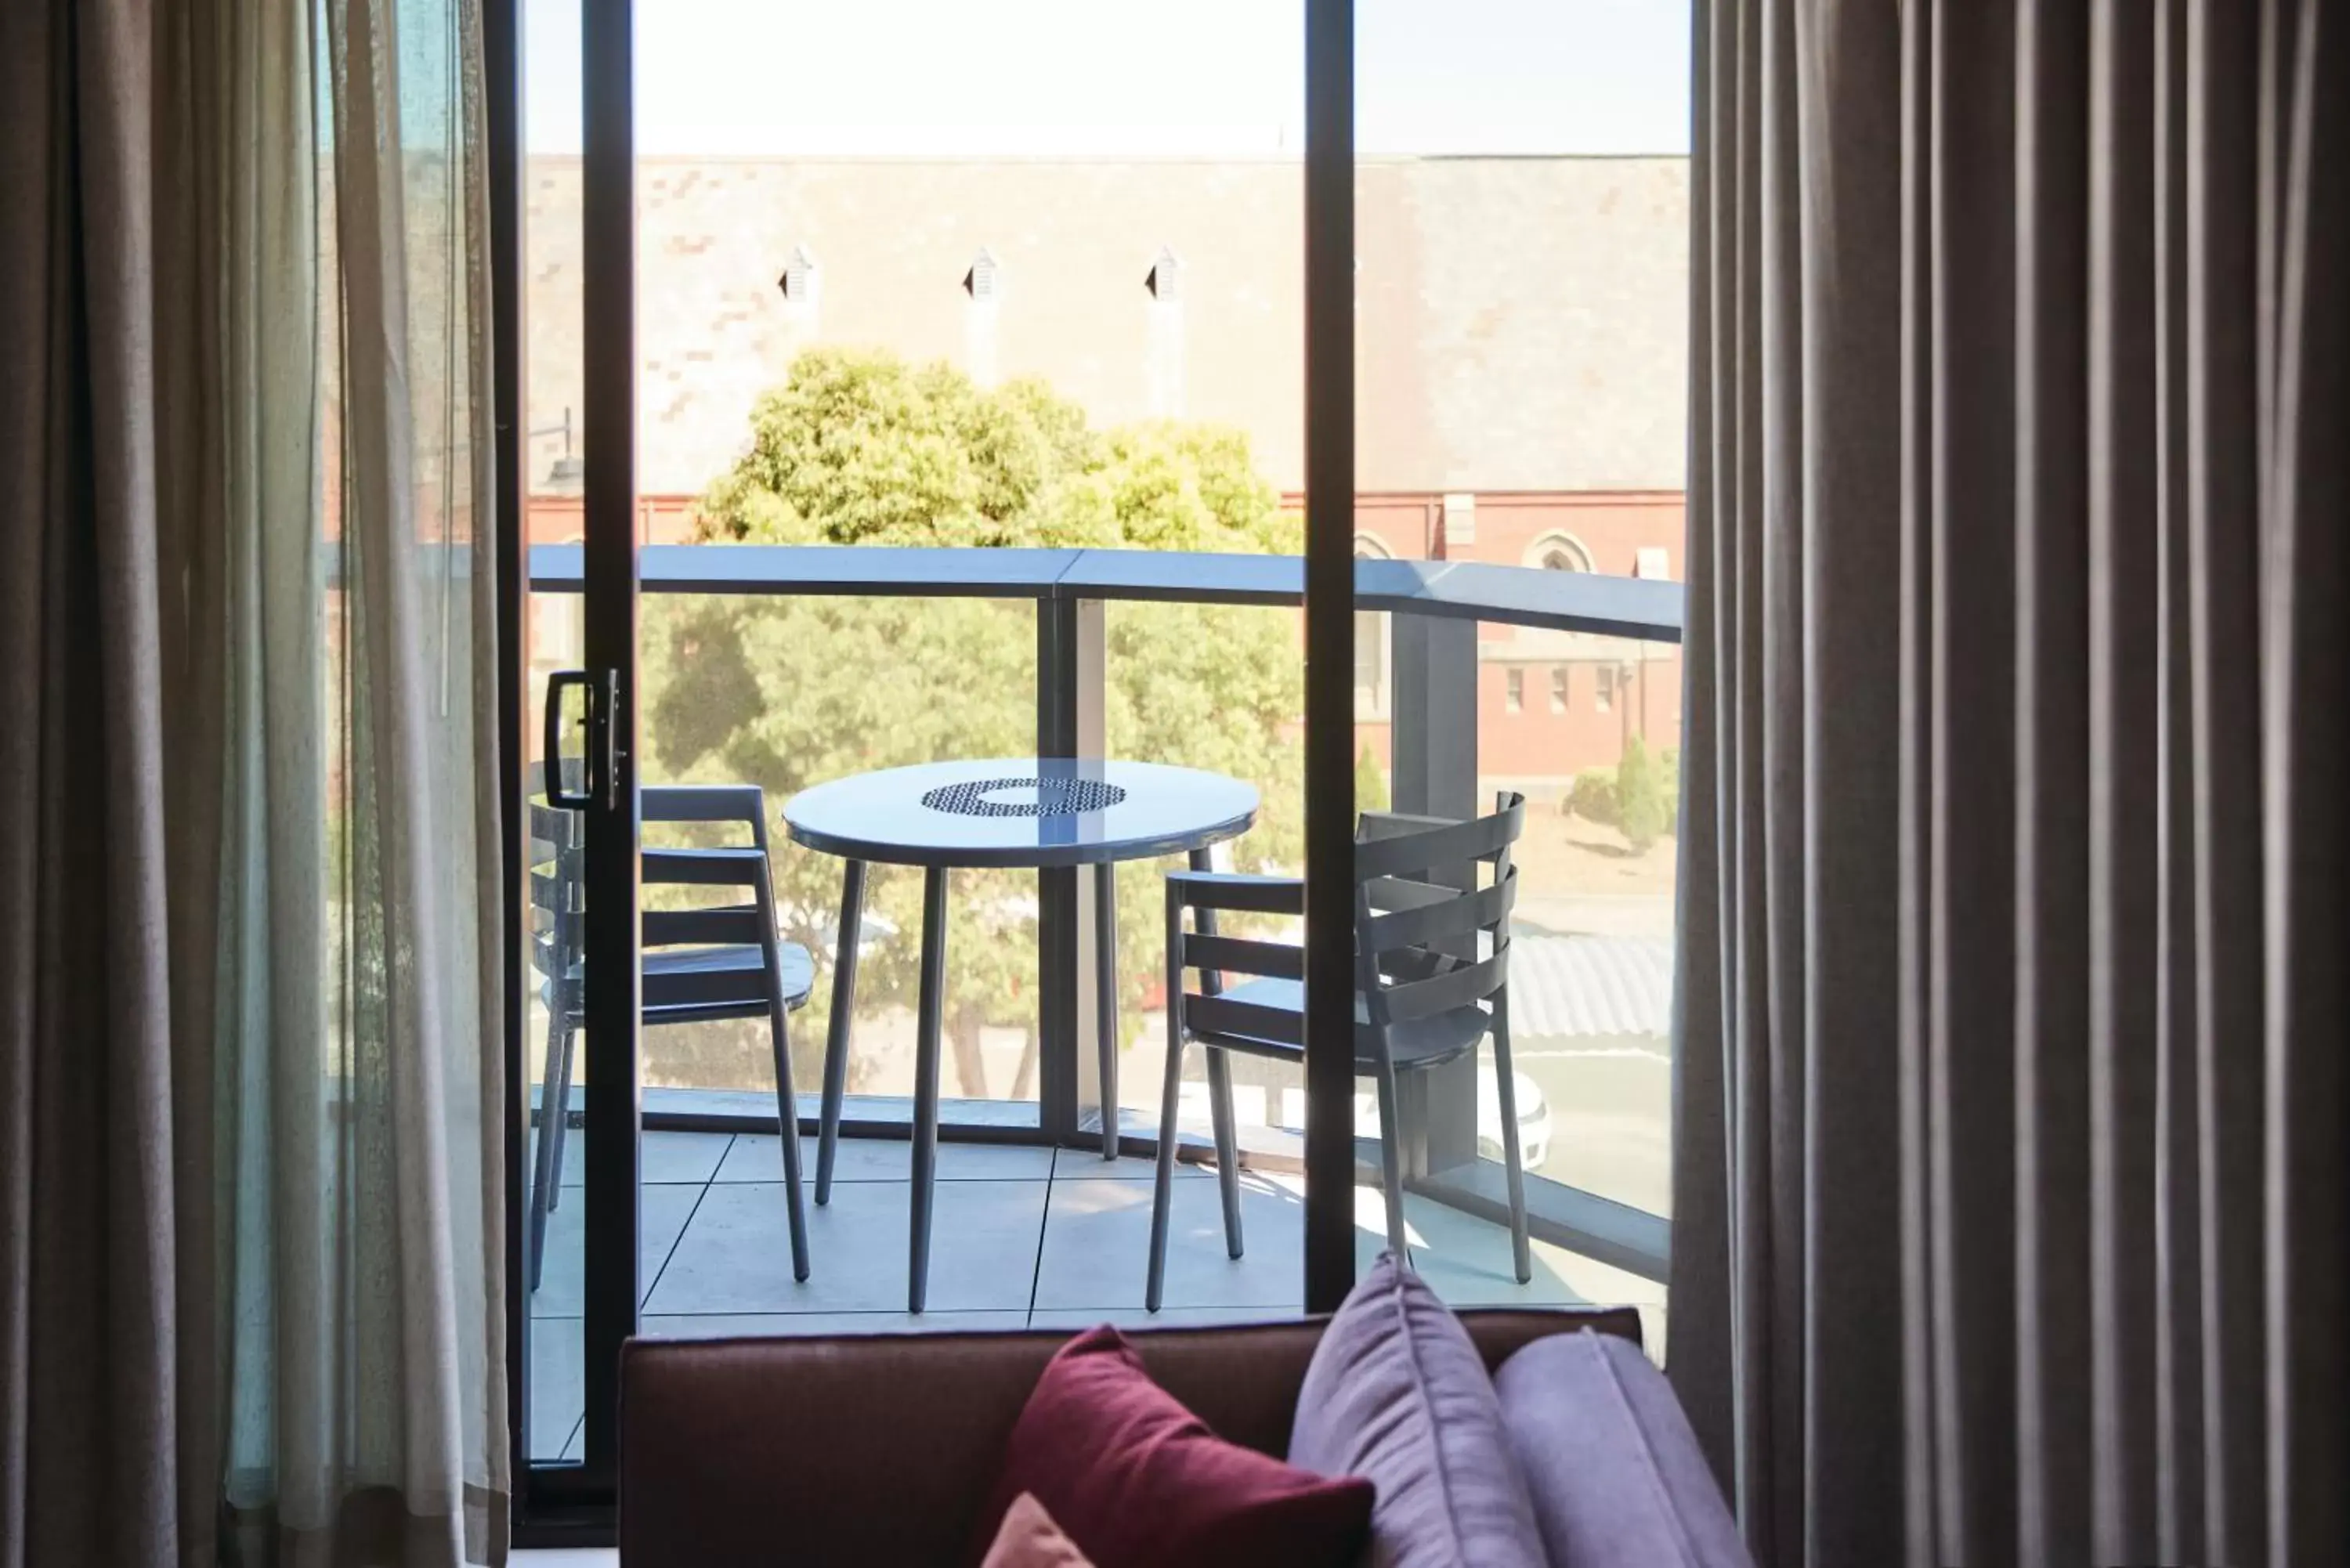 Adina Apartment Hotel Melbourne, Pentridge